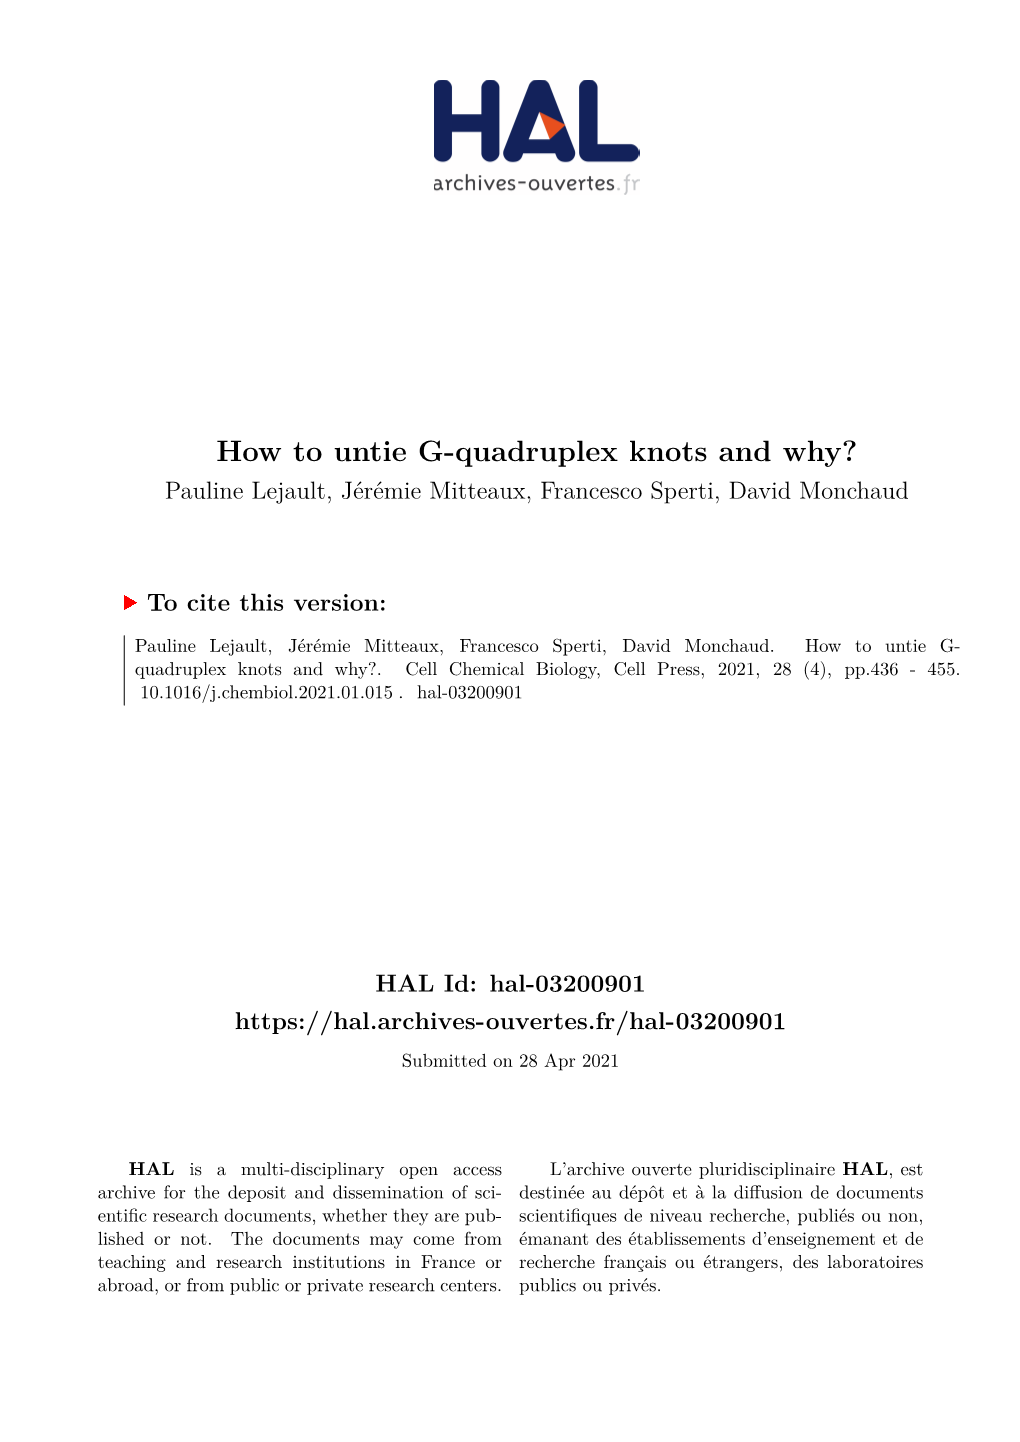 How to Untie G-Quadruplex Knots and Why? Pauline Lejault, Jérémie Mitteaux, Francesco Sperti, David Monchaud